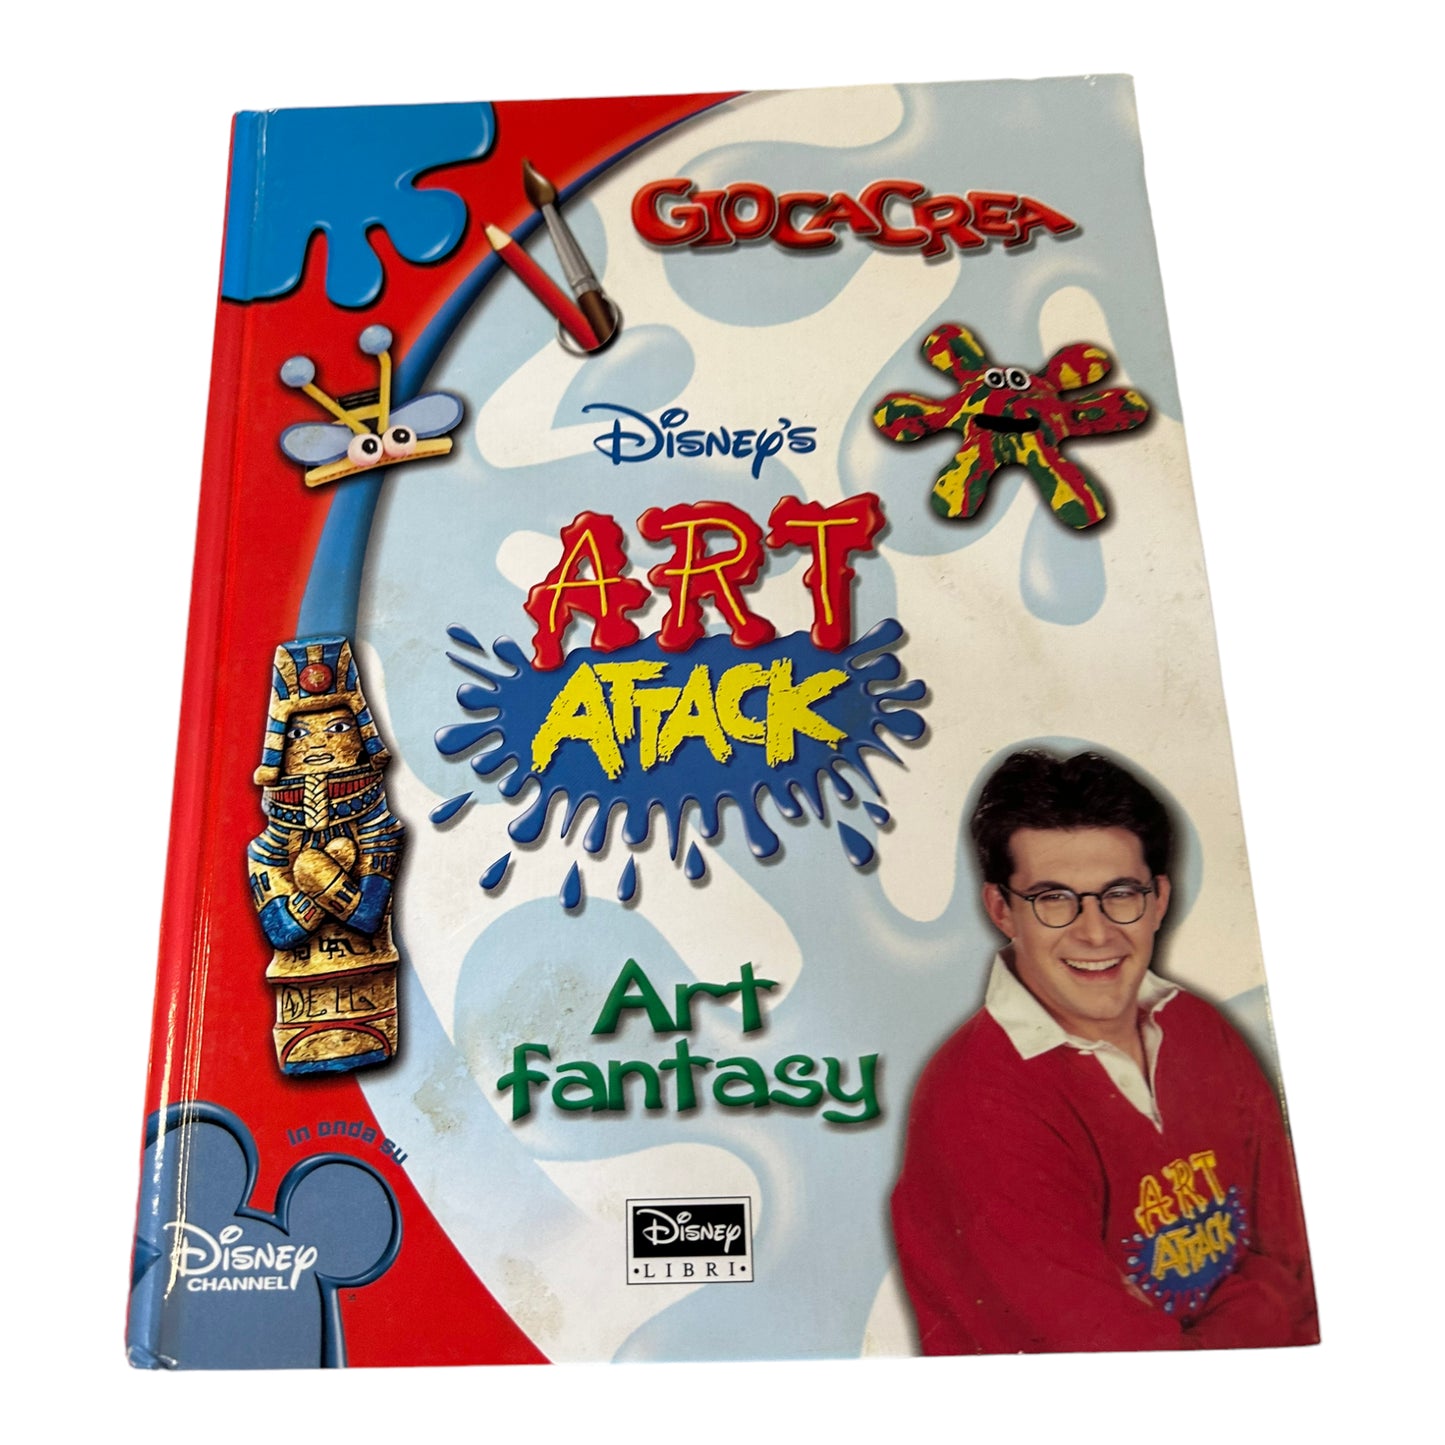 GiocaCrea Art attack - Art Fantasy